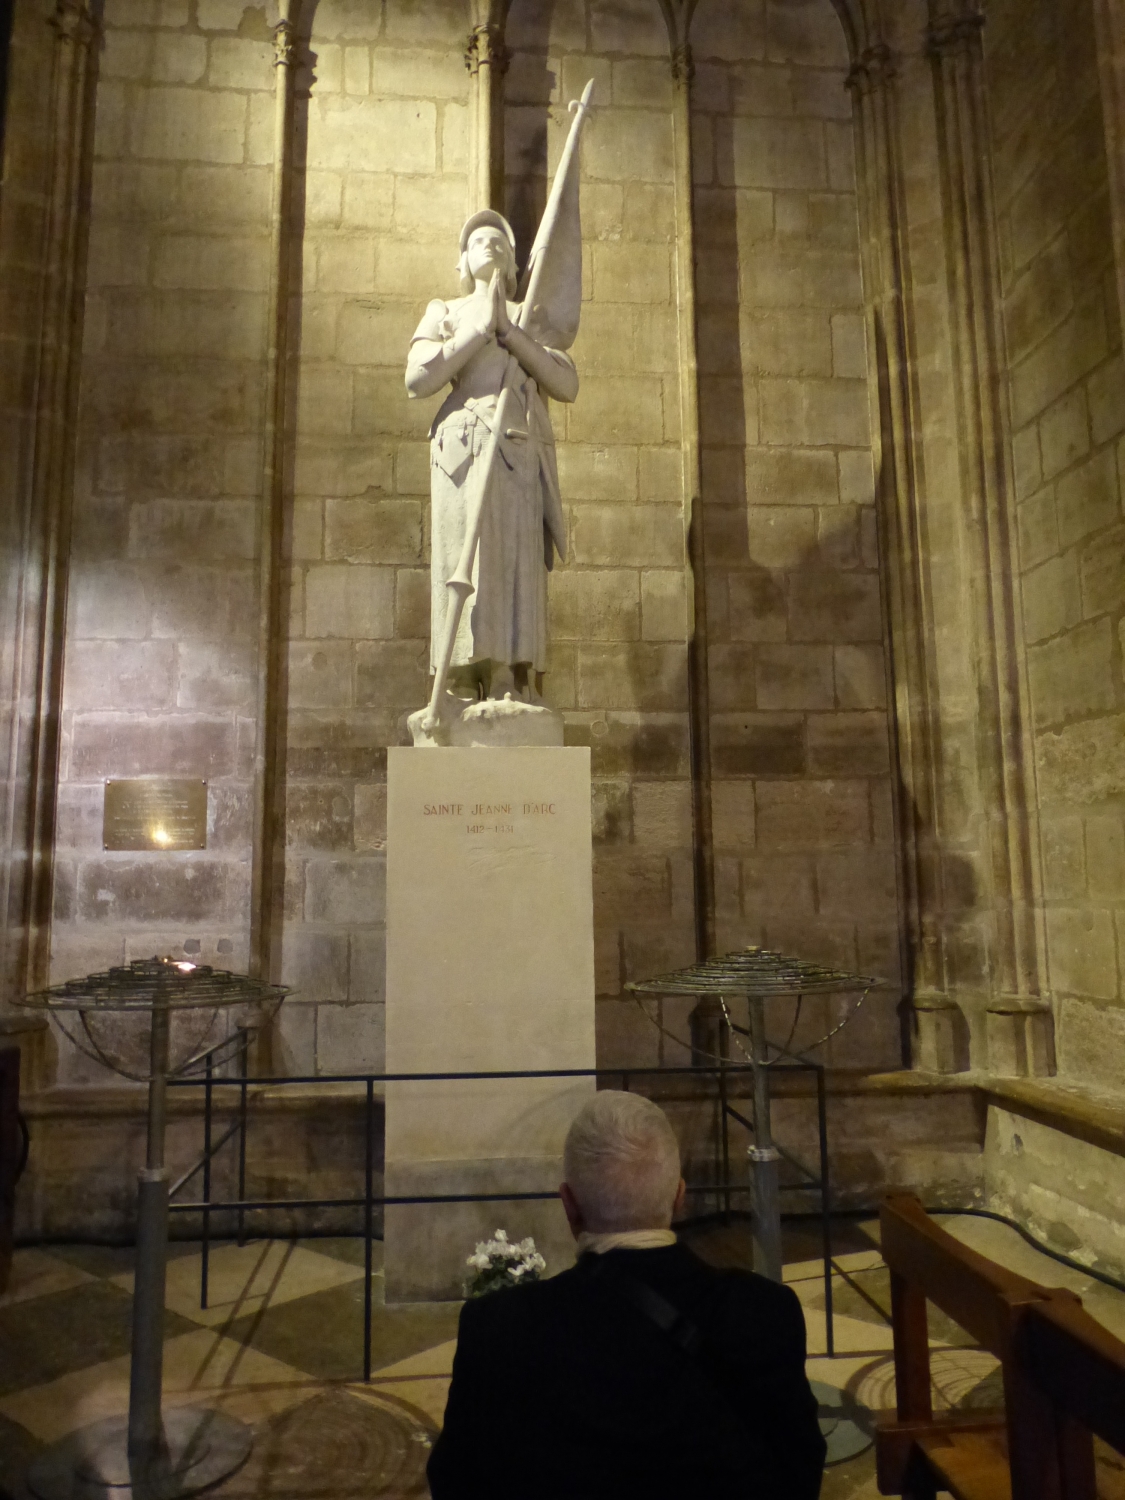 Sainte Jeanne d'Arc - Cathédrale Notre Dame de Paris